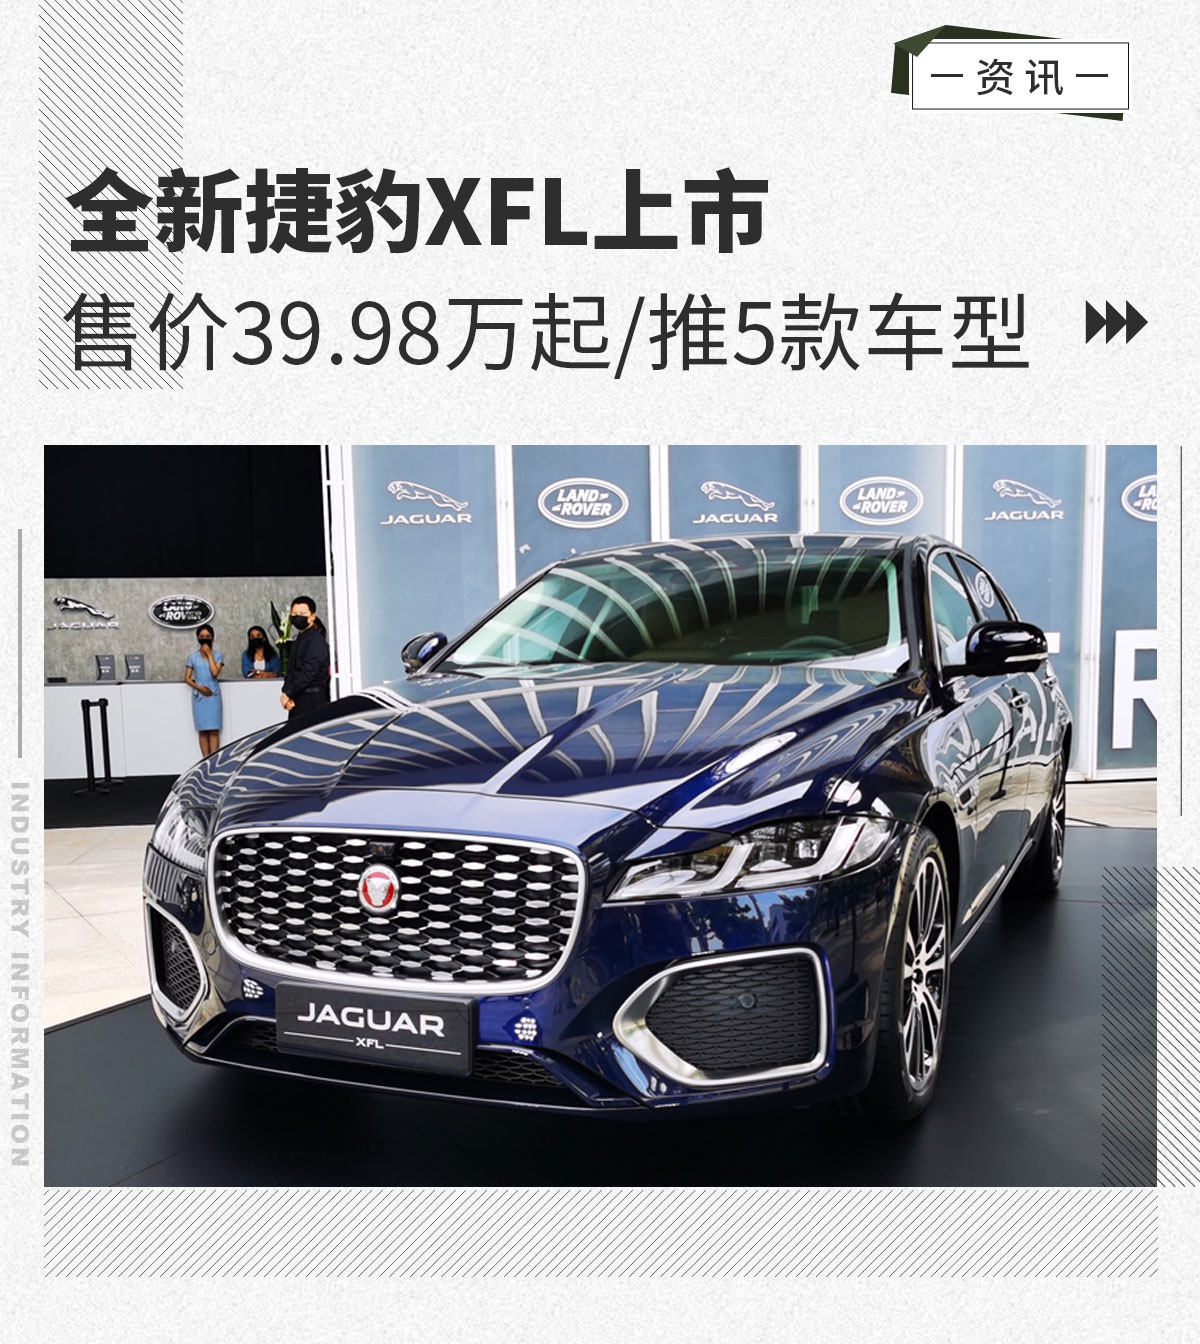 全新捷豹XFL正式上市 售价39.98万起/推5款车型